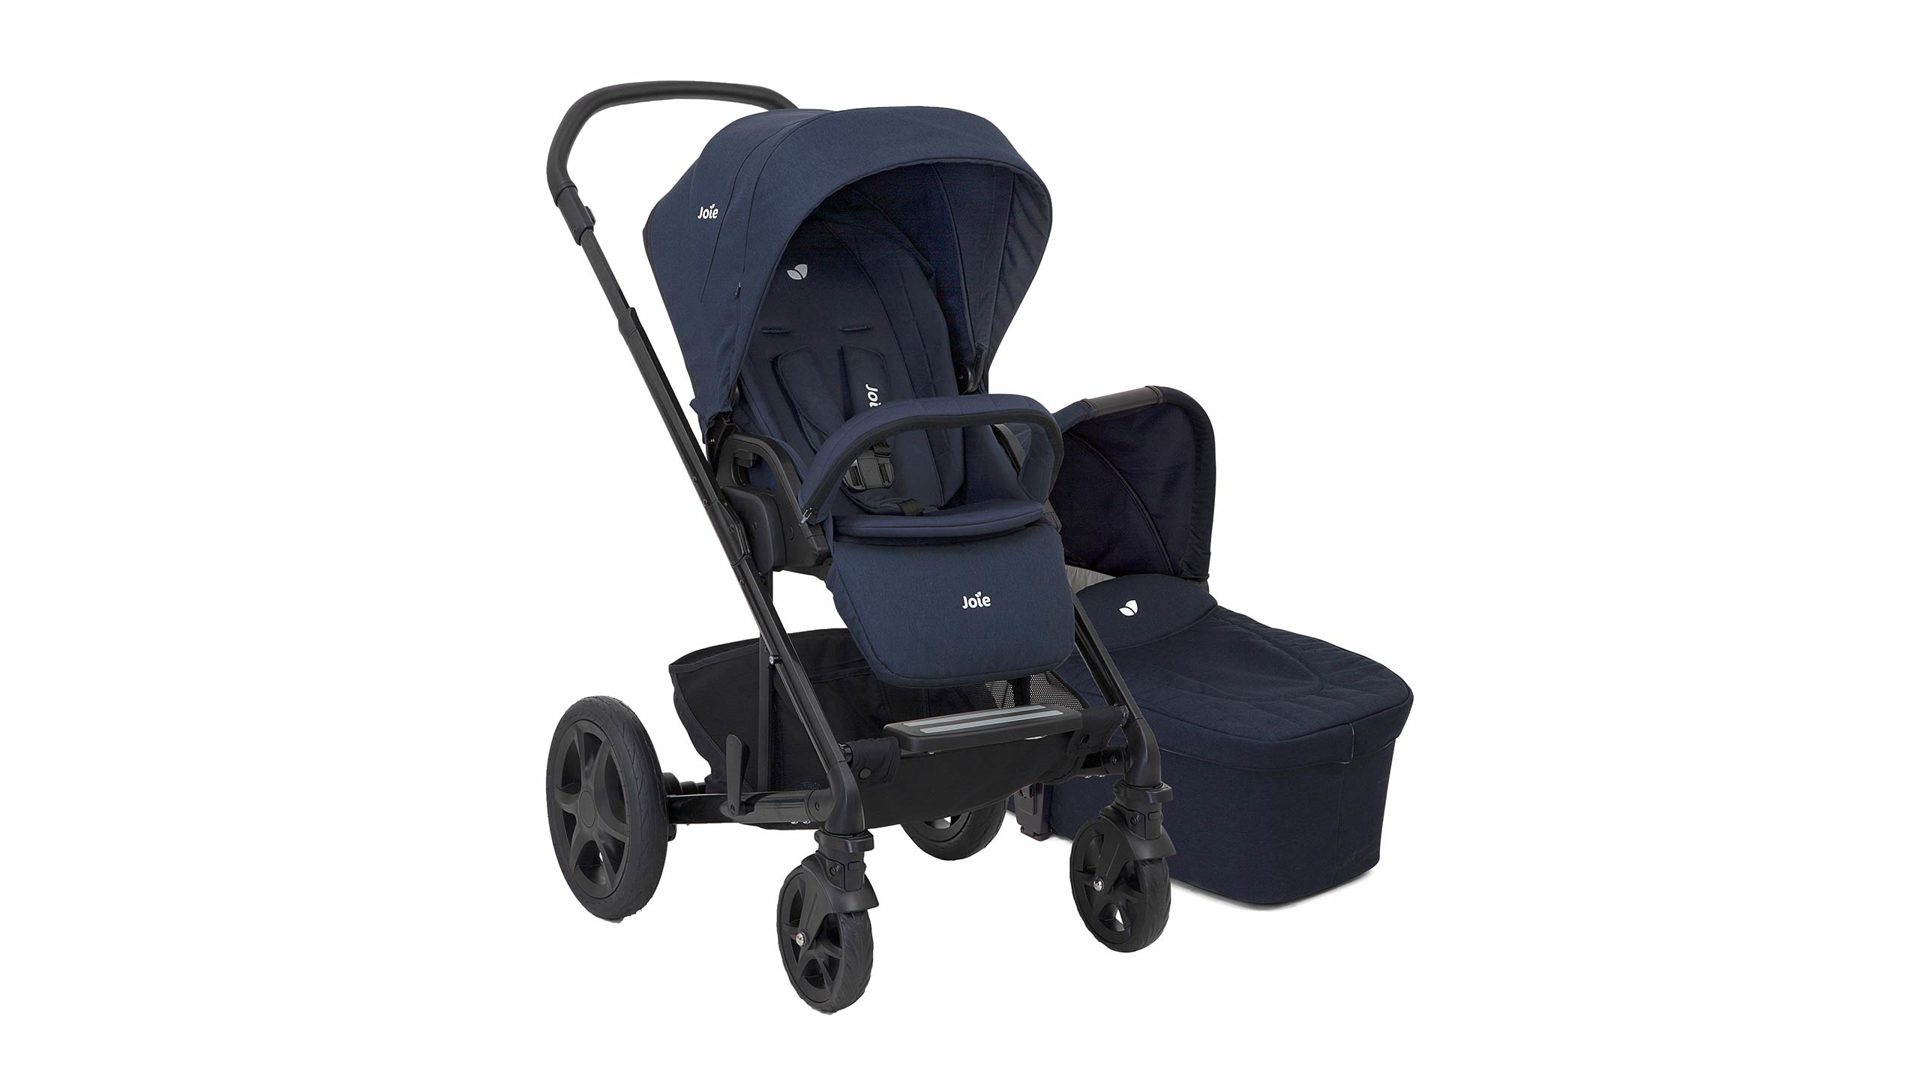 Babyzimmer Allison gmbh aus Stoff Textil in Blau JOIE Kombi-Kinderwagen Chrome DLX blau - mit XXL-Sonnendach